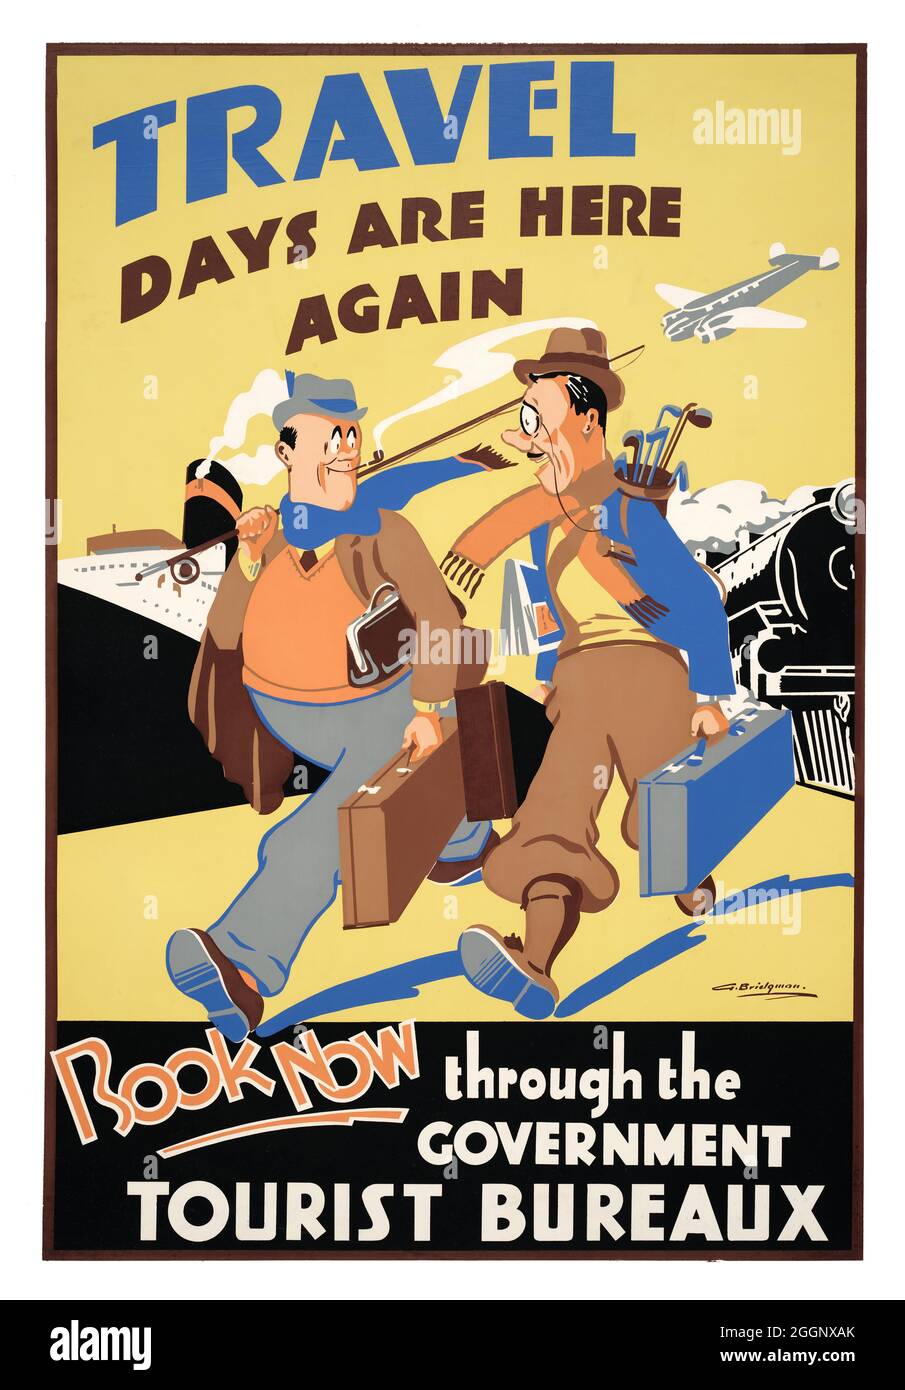 I giorni di viaggio sono di nuovo qui. Prenota ora attraverso il Government Tourist Bureaux di George Frederick Thomas Bridgman (1897-1966). Poster d'epoca restaurato pubblicato nel 1937 in Nuova Zelanda. Foto Stock